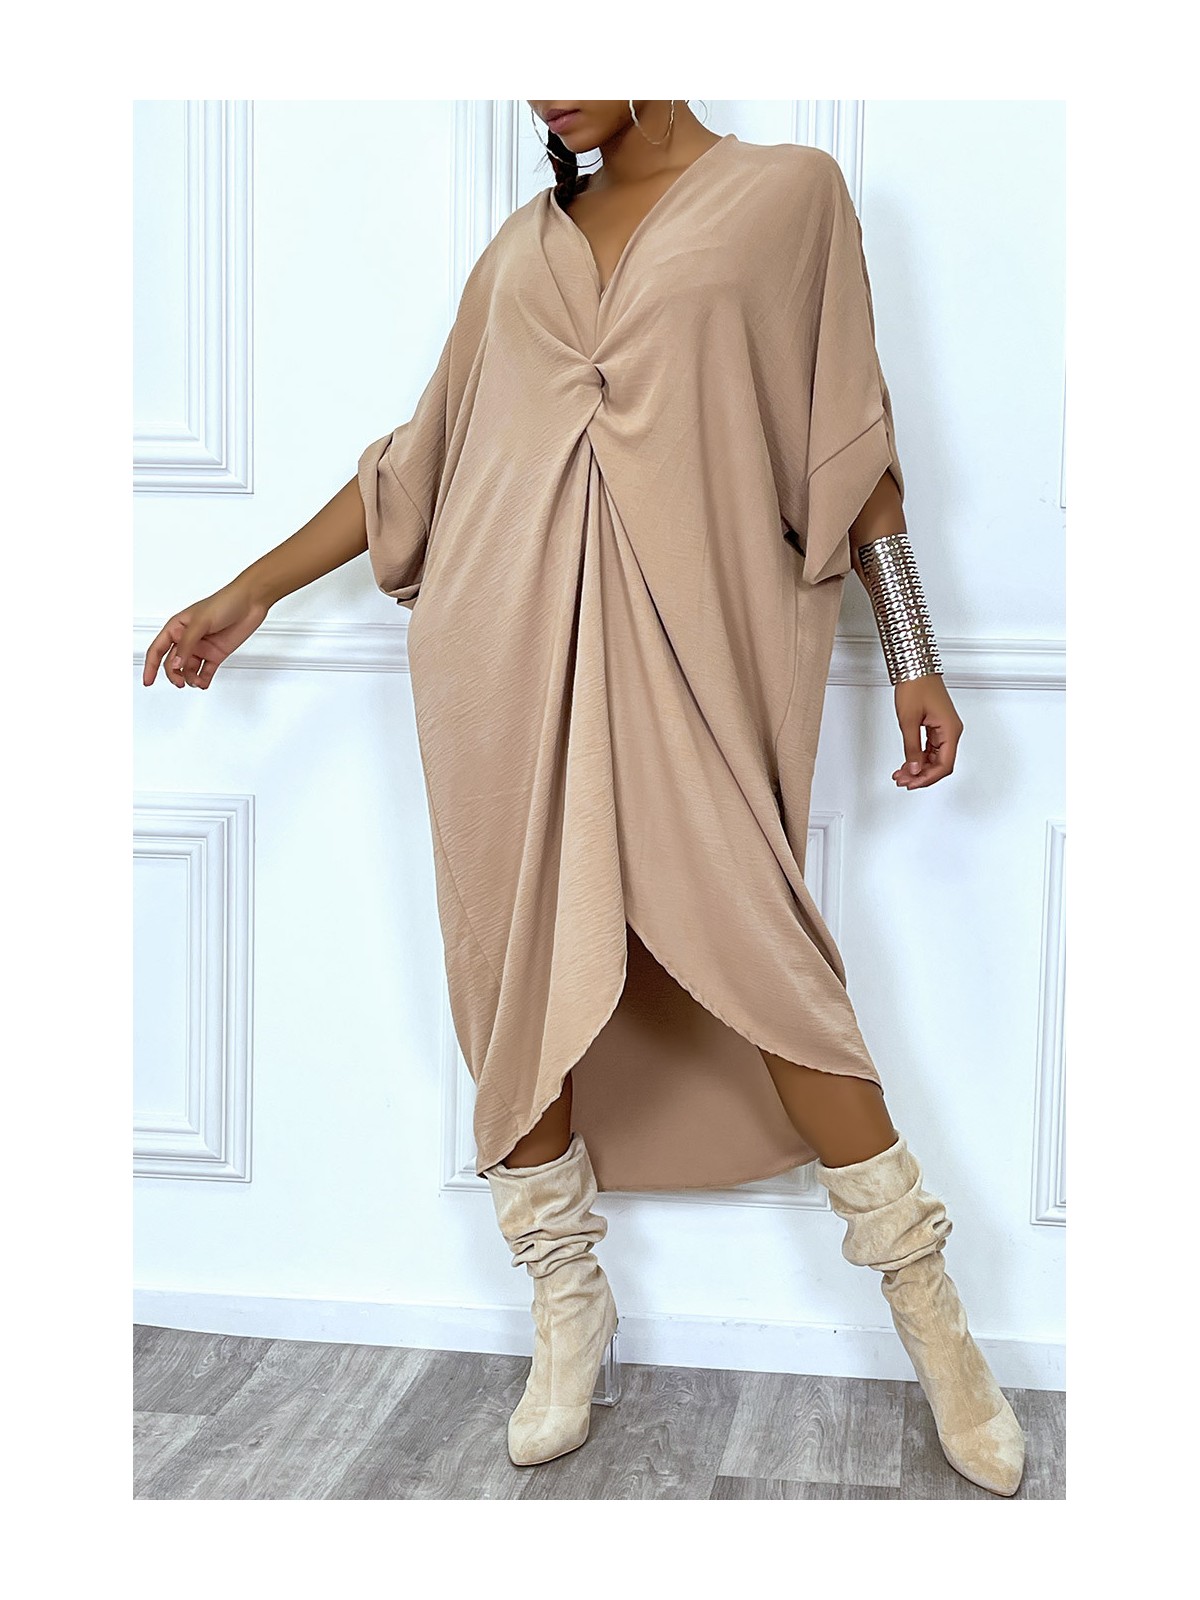 Robe tunique oversize camel col v détail froncé - 3